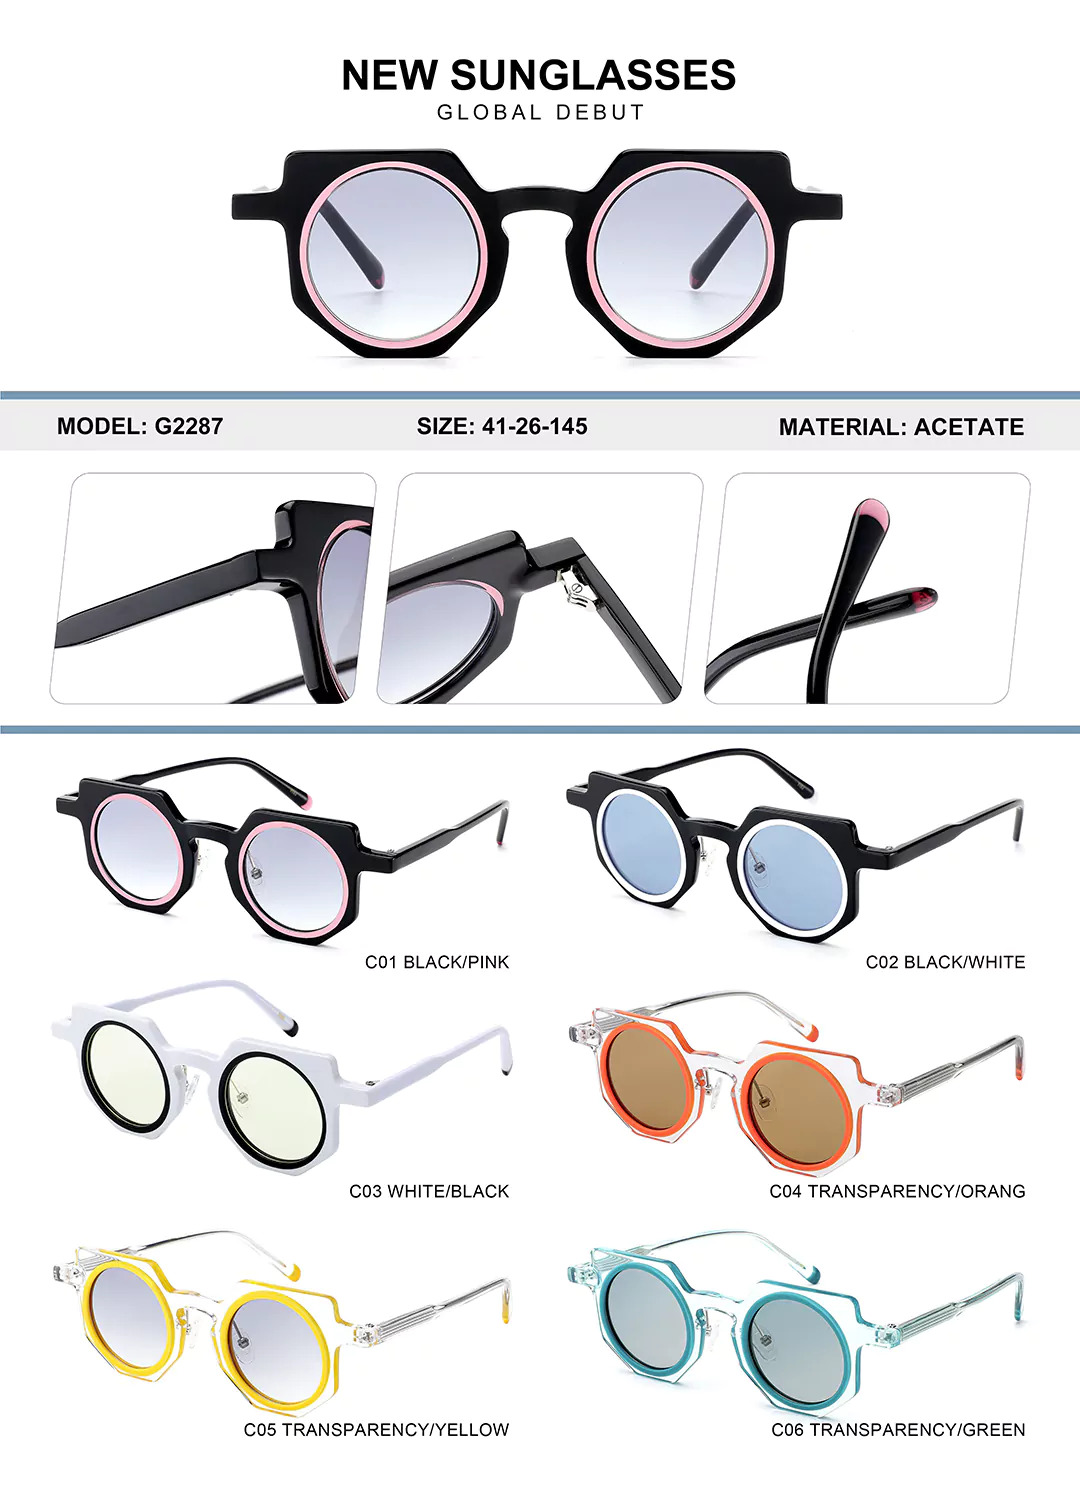 Kids Acetate Glasses G2287 Different colors shown, detail shots, size